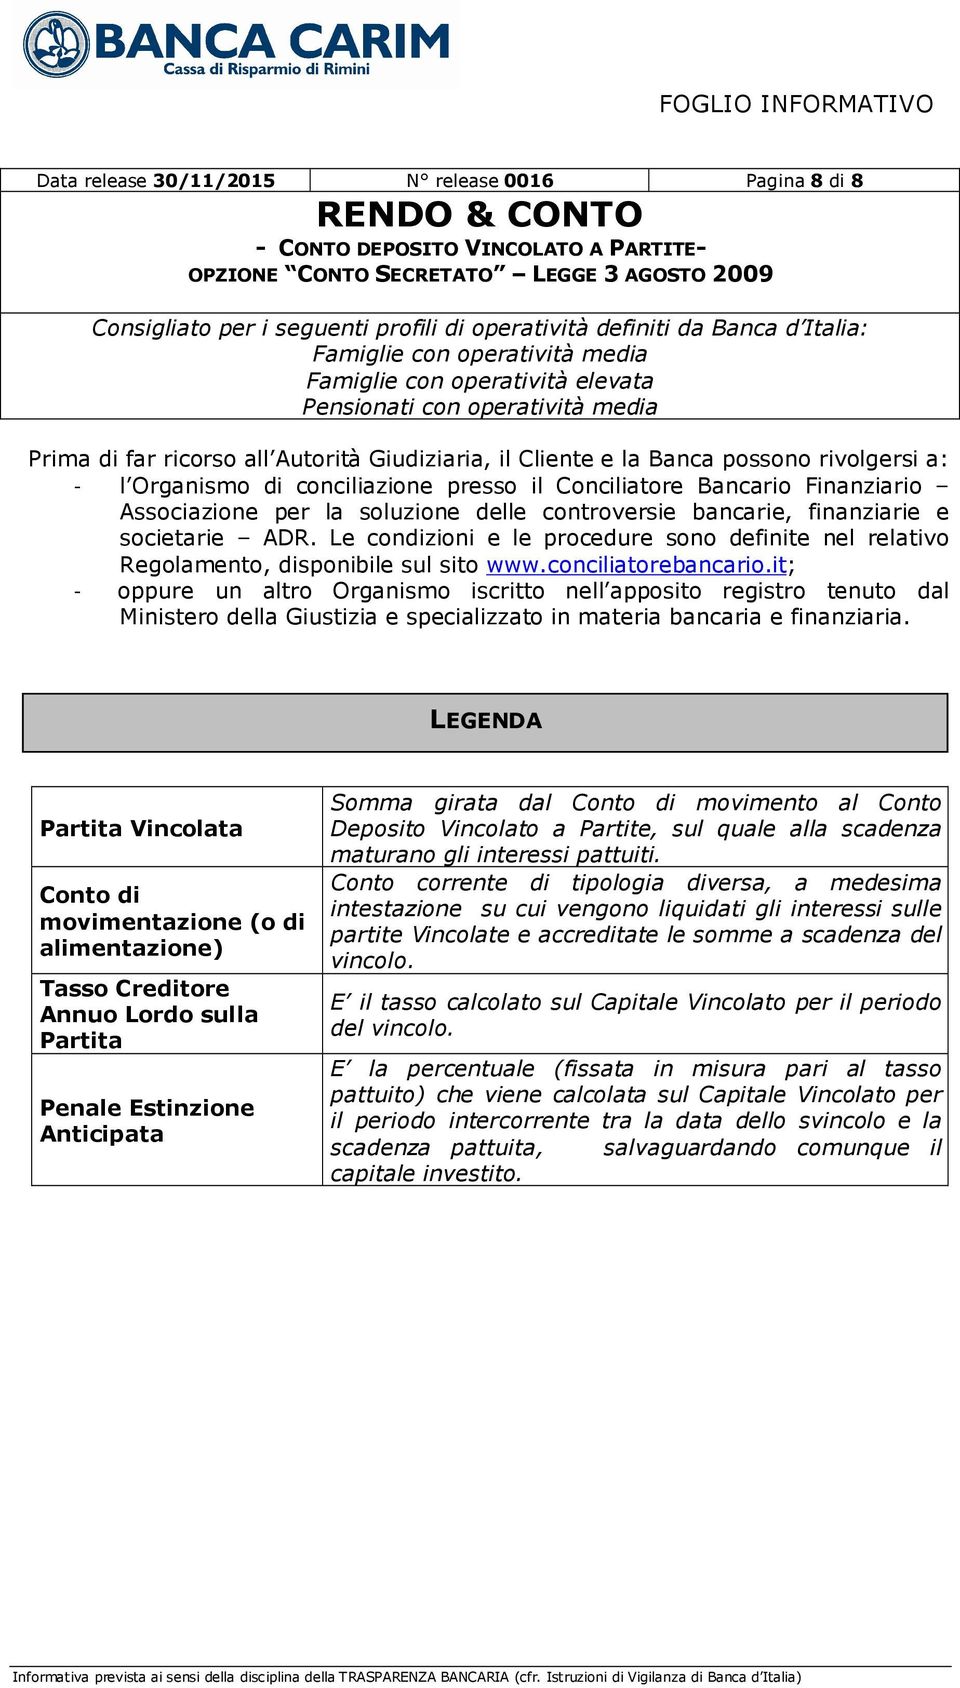 Le condizioni e le procedure sono definite nel relativo Regolamento, disponibile sul sito www.conciliatorebancario.